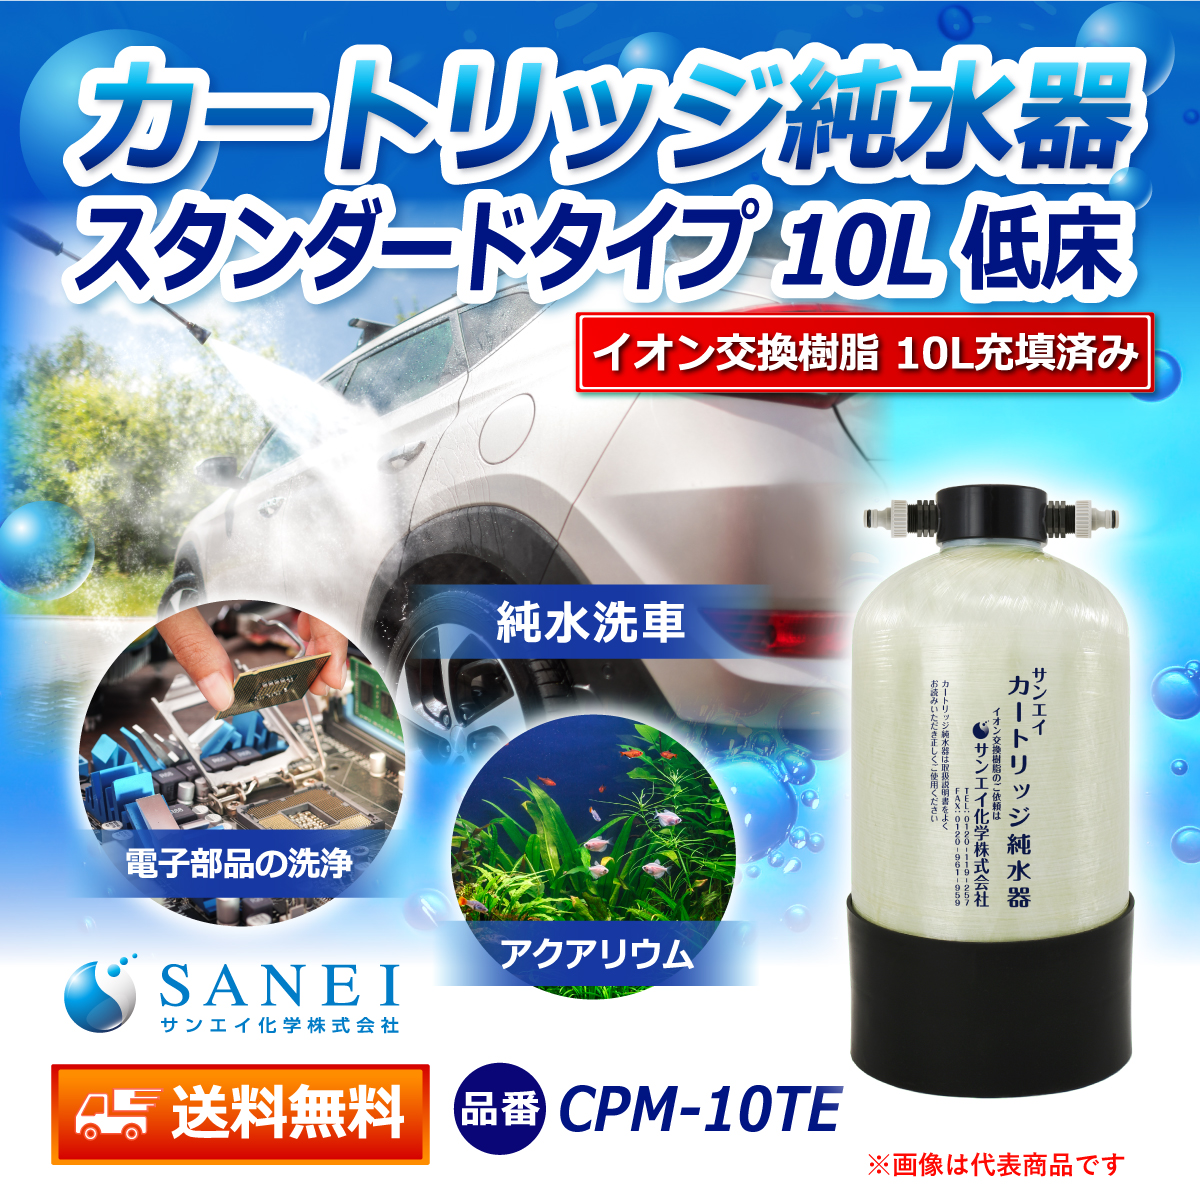 サンエイ化学 カートリッジ純水器 10L スタンダードタイプ 低床タイプ CPM-10TE イオン交換樹脂 10L入り【純水器 本体単品】